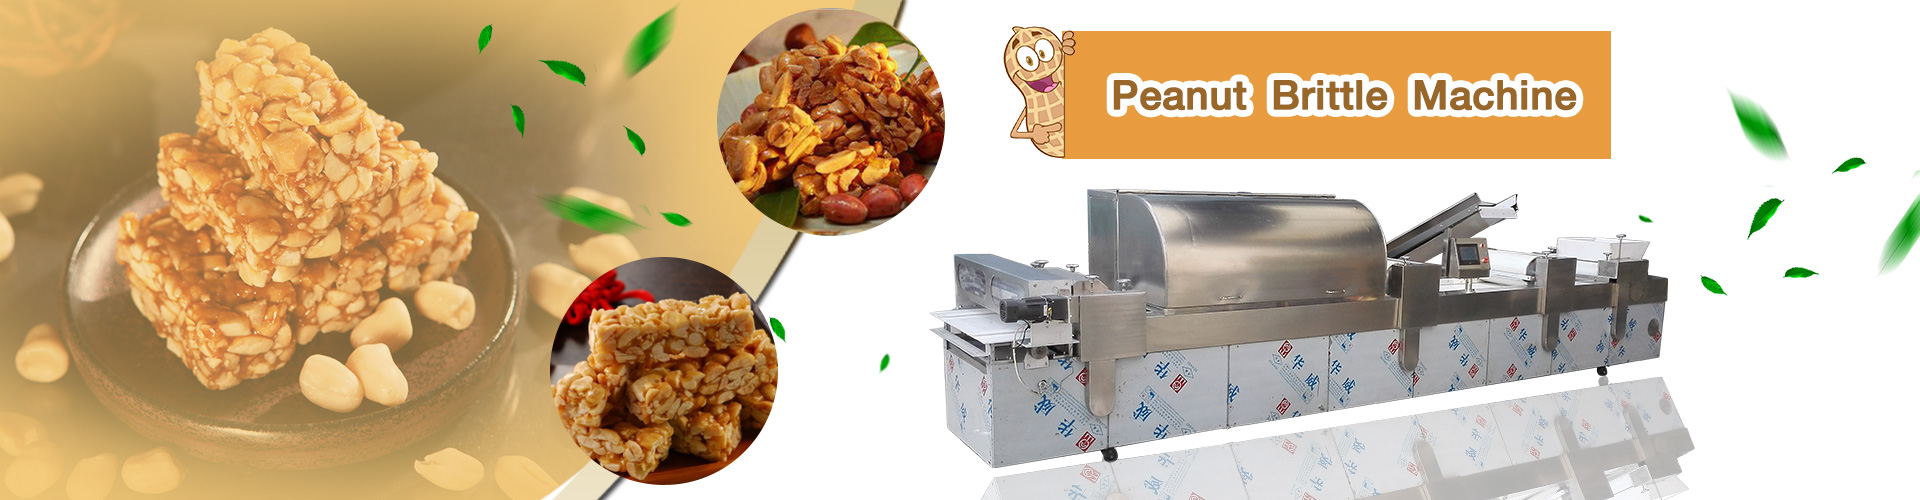 peanut brittle machine